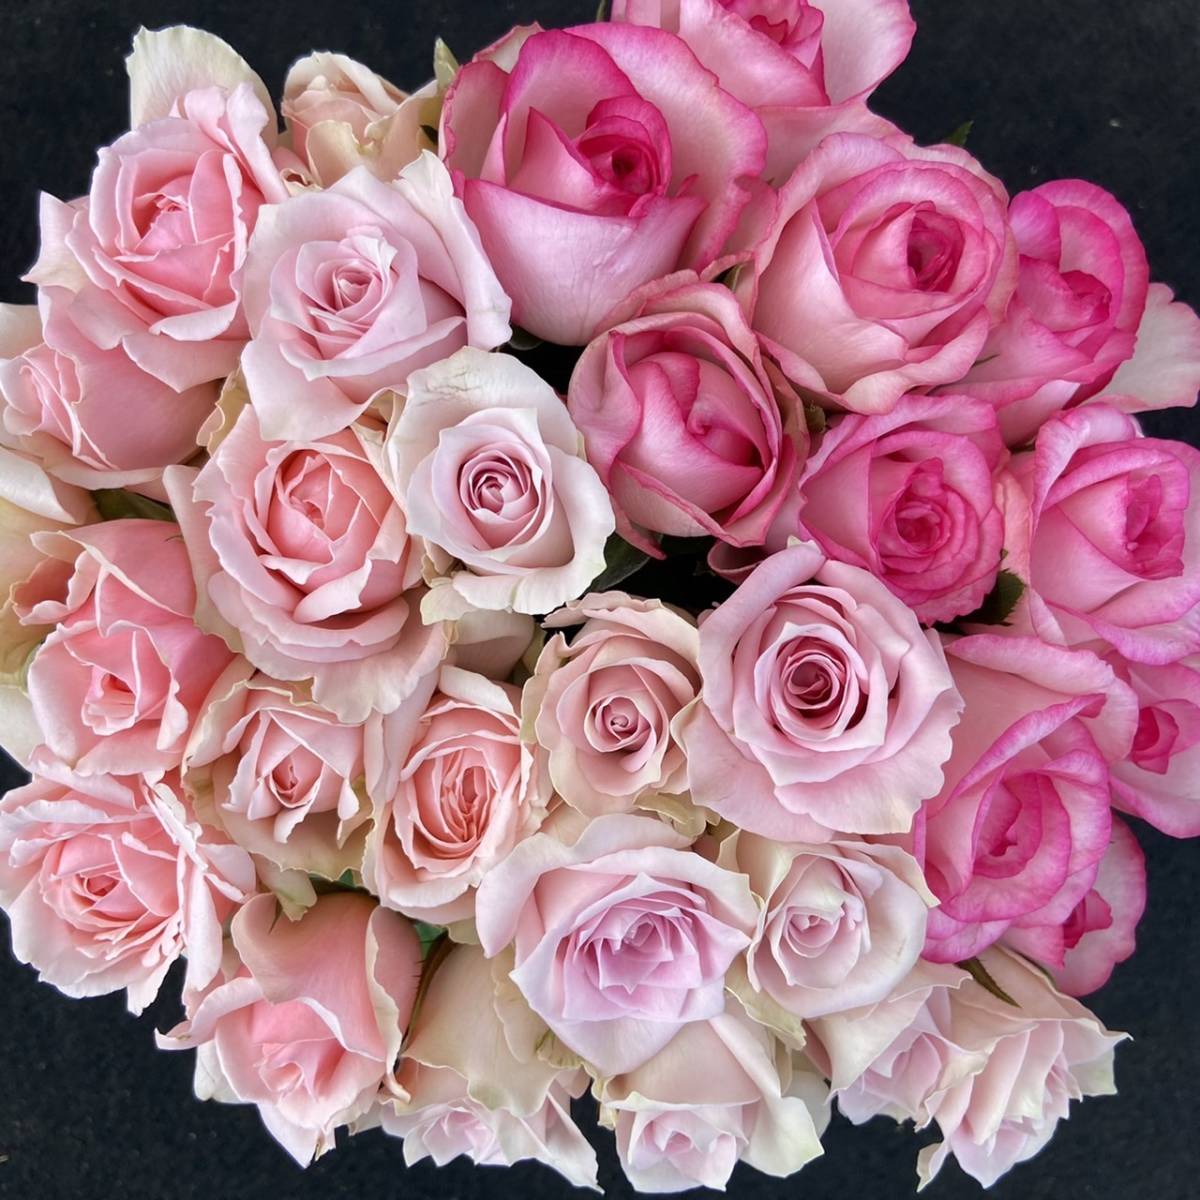 Роза (Cut Flower / Fresh Flower) Розовая смесь 30㎝ SM Размер 30 штук Прямая доставка! Отличная свежесть!